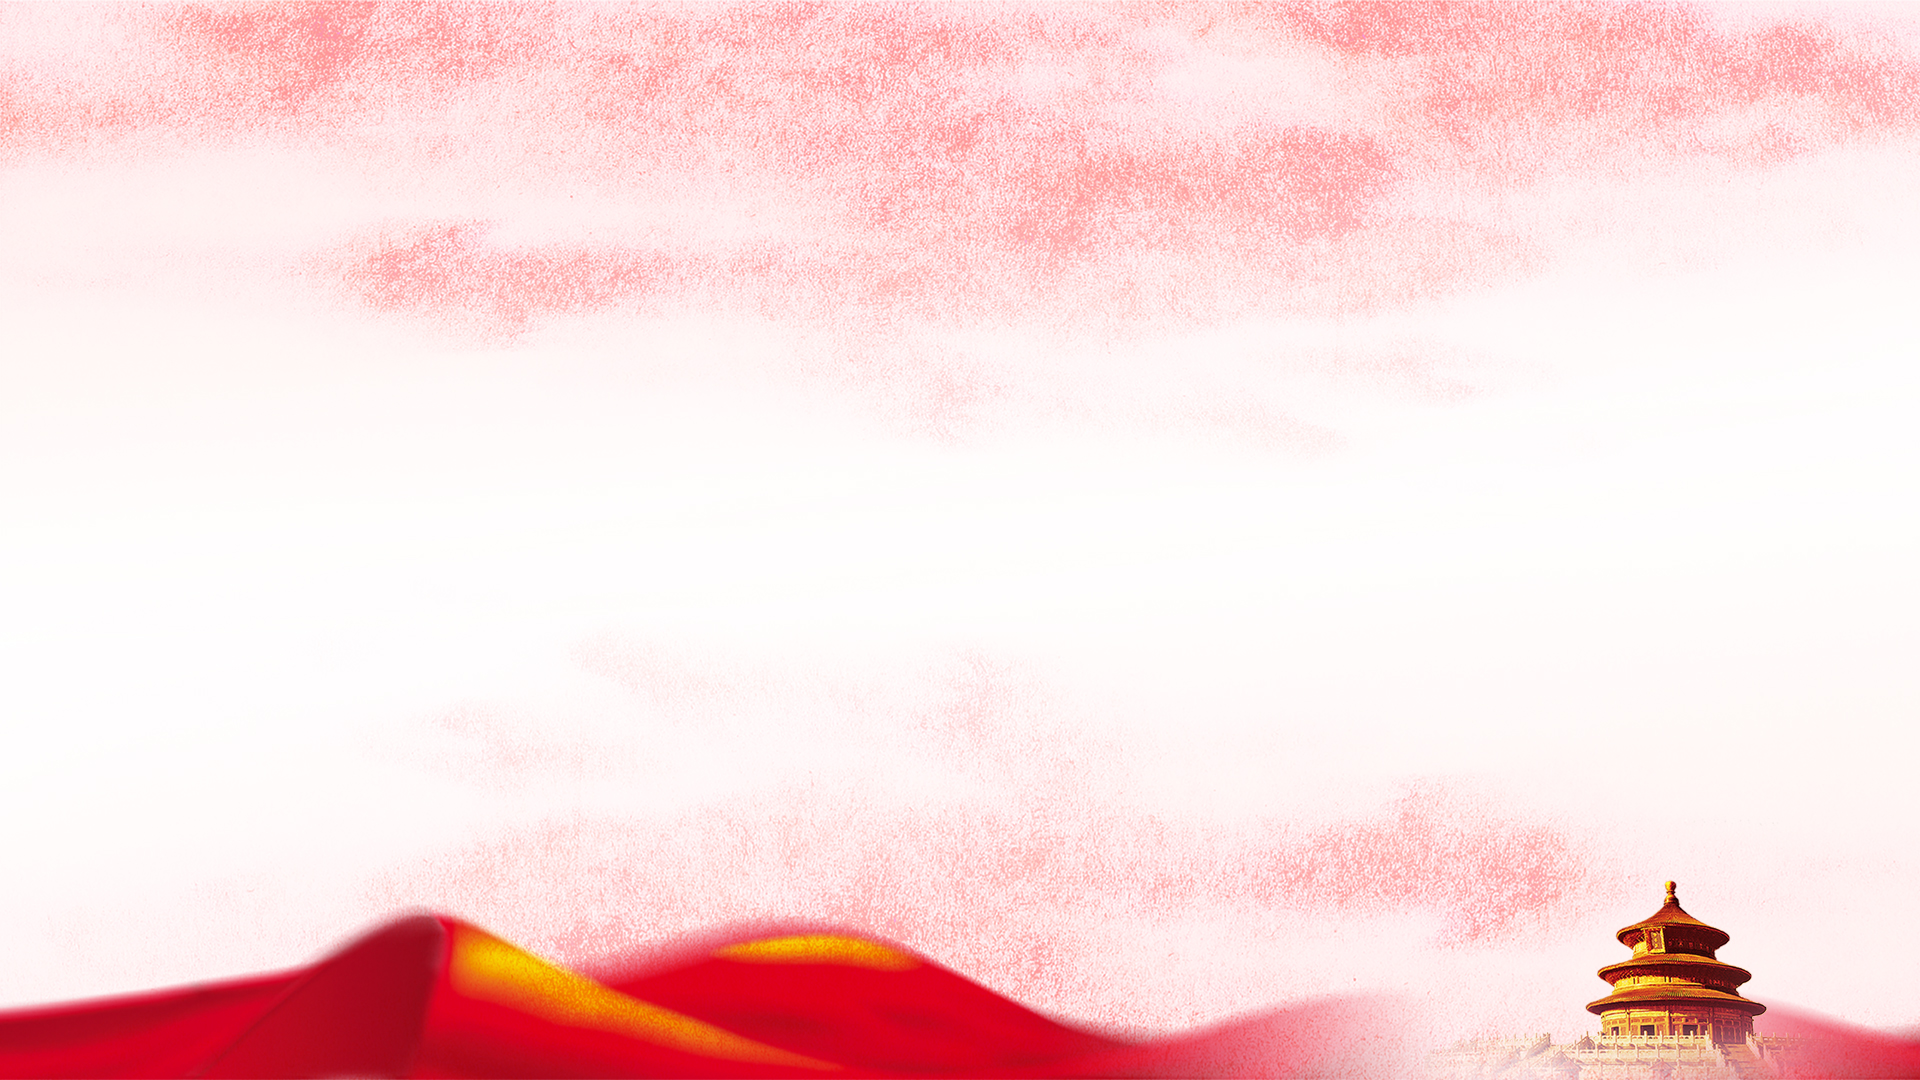 磨砂淡雅红天坛红丝绸高清背景